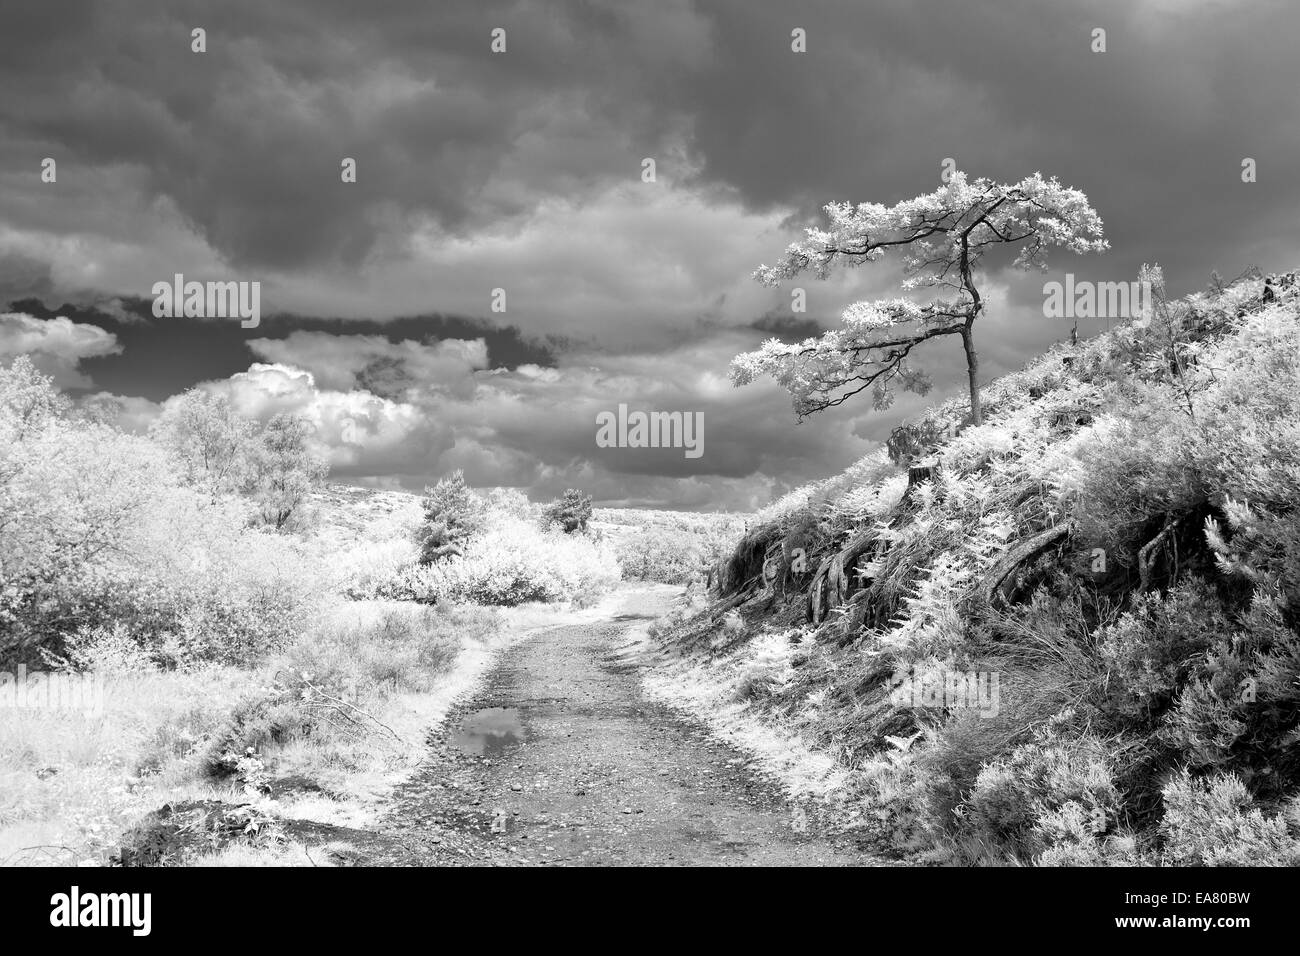 Photographie de paysage infrarouge arbre isolé au-dessus du sentier Cannock Chase aonb staffordshire england uk campagne Banque D'Images